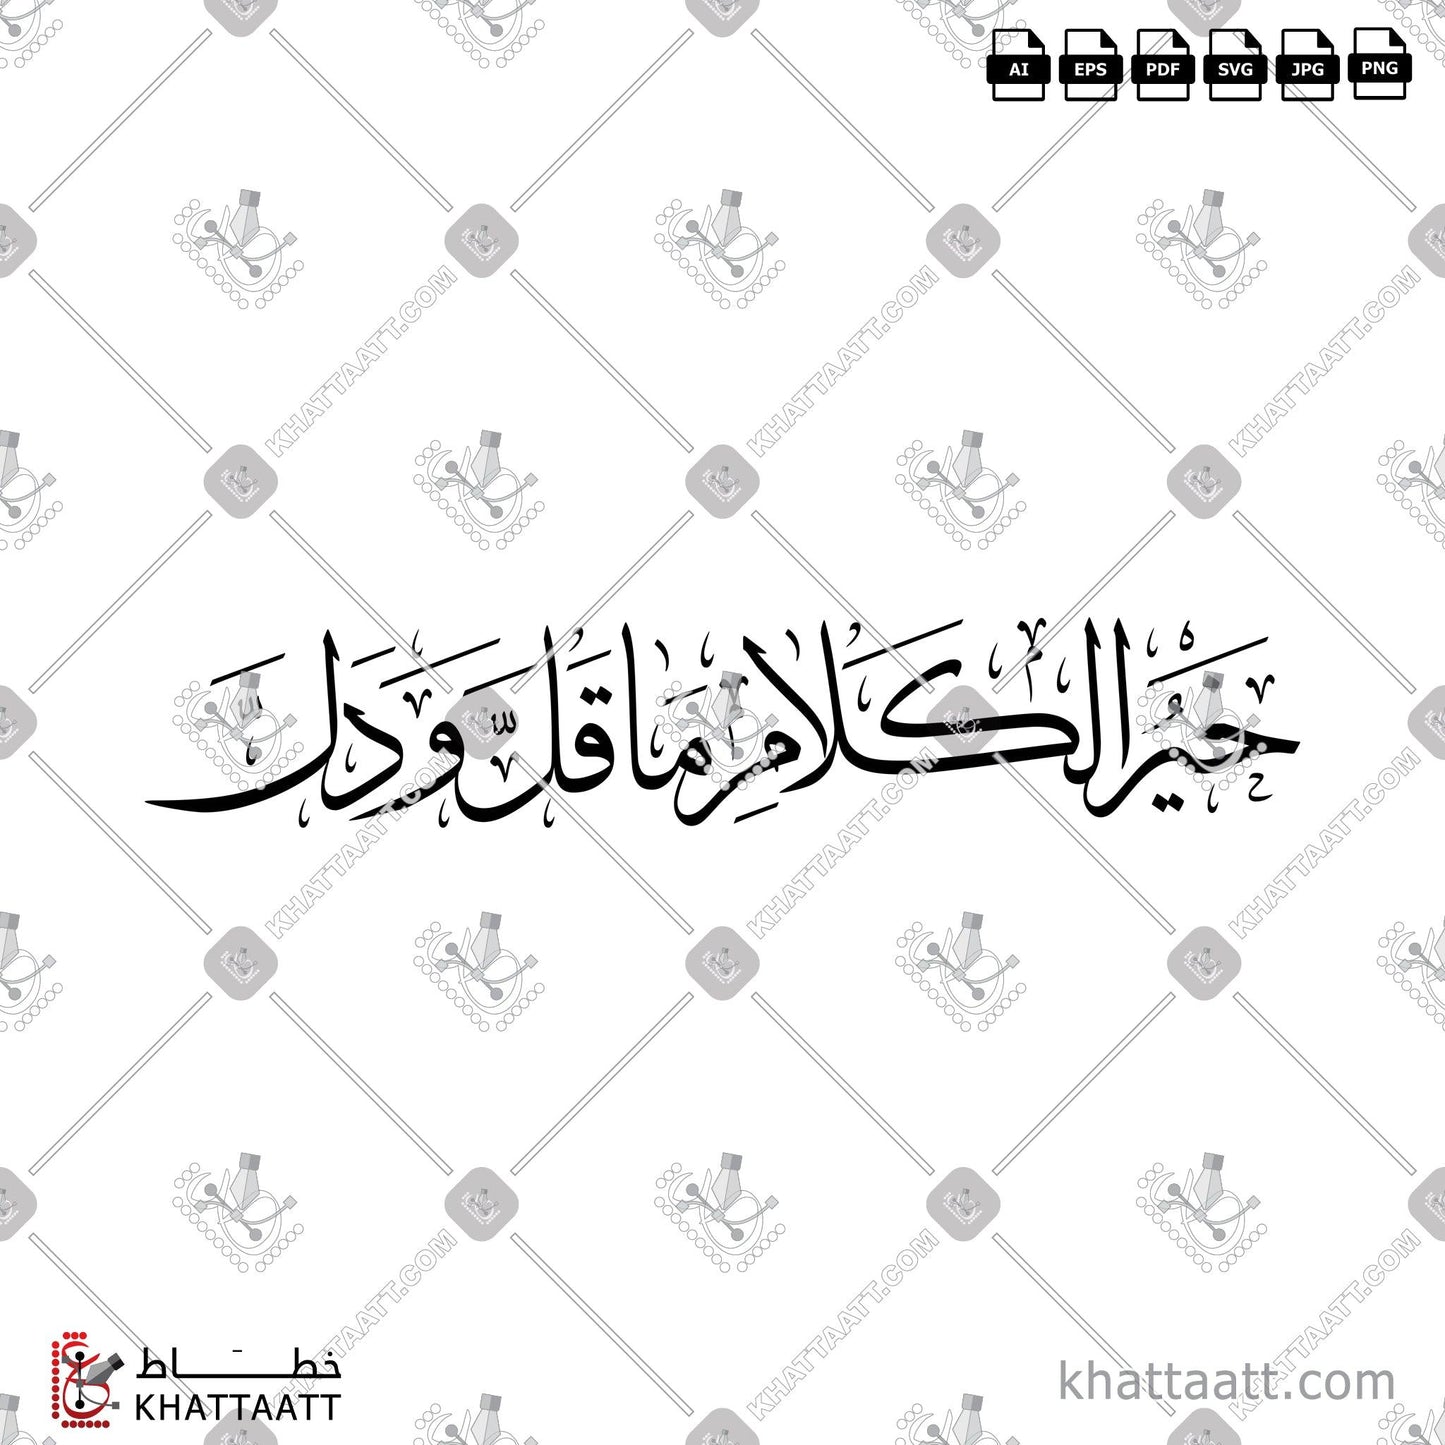 Arabic Calligraphy Vector, Thuluth Script, الخط العربي, خط الثلث, خير الكلام ما قل ودل KHATTAATT